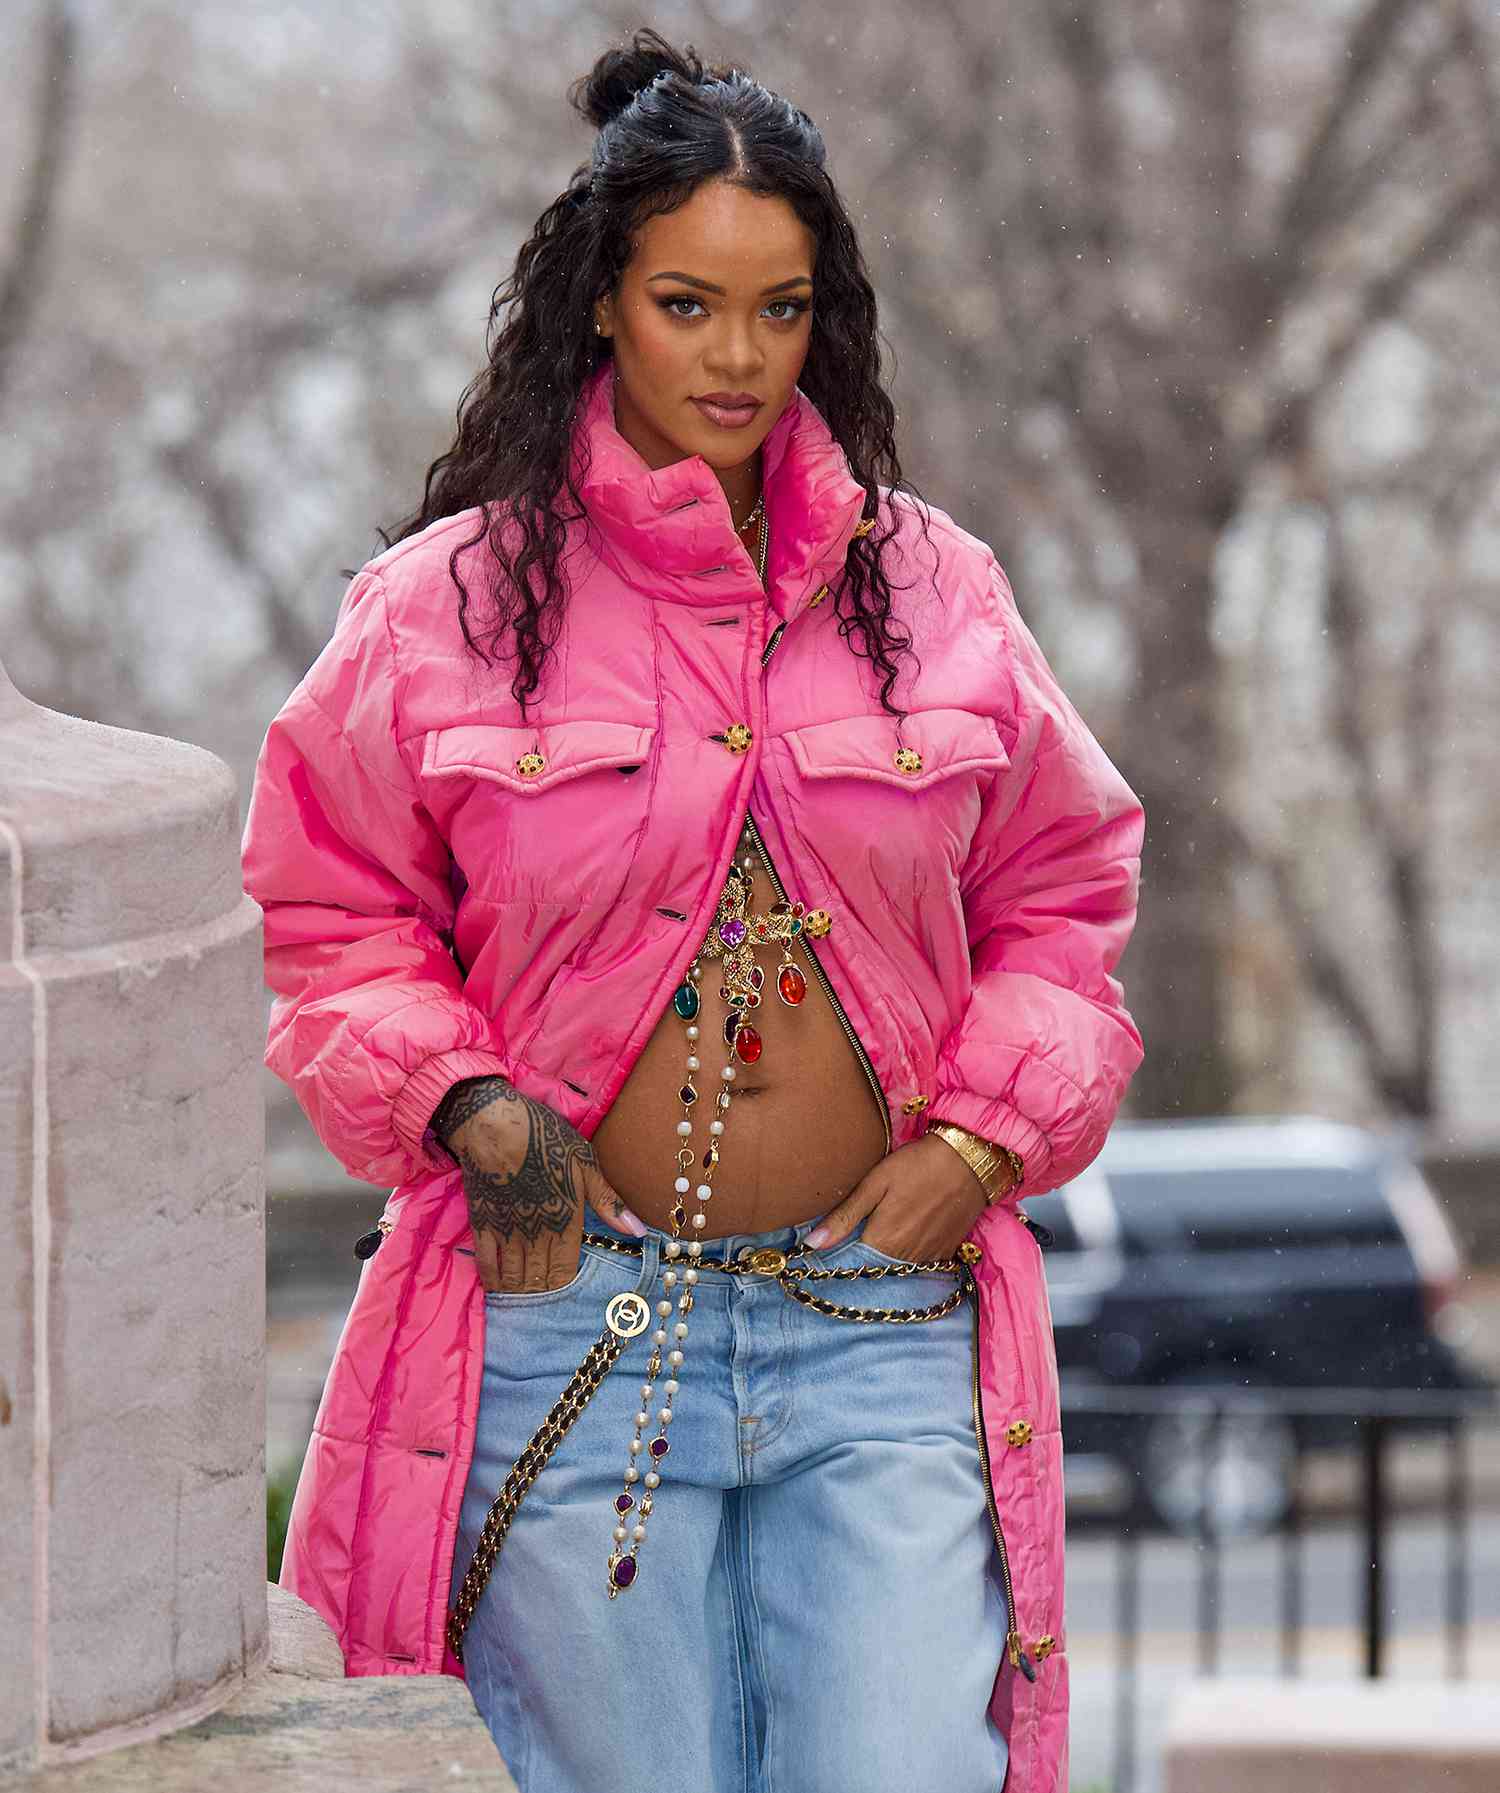 Rihanna ASAP Rocky Pregnancy Announcement